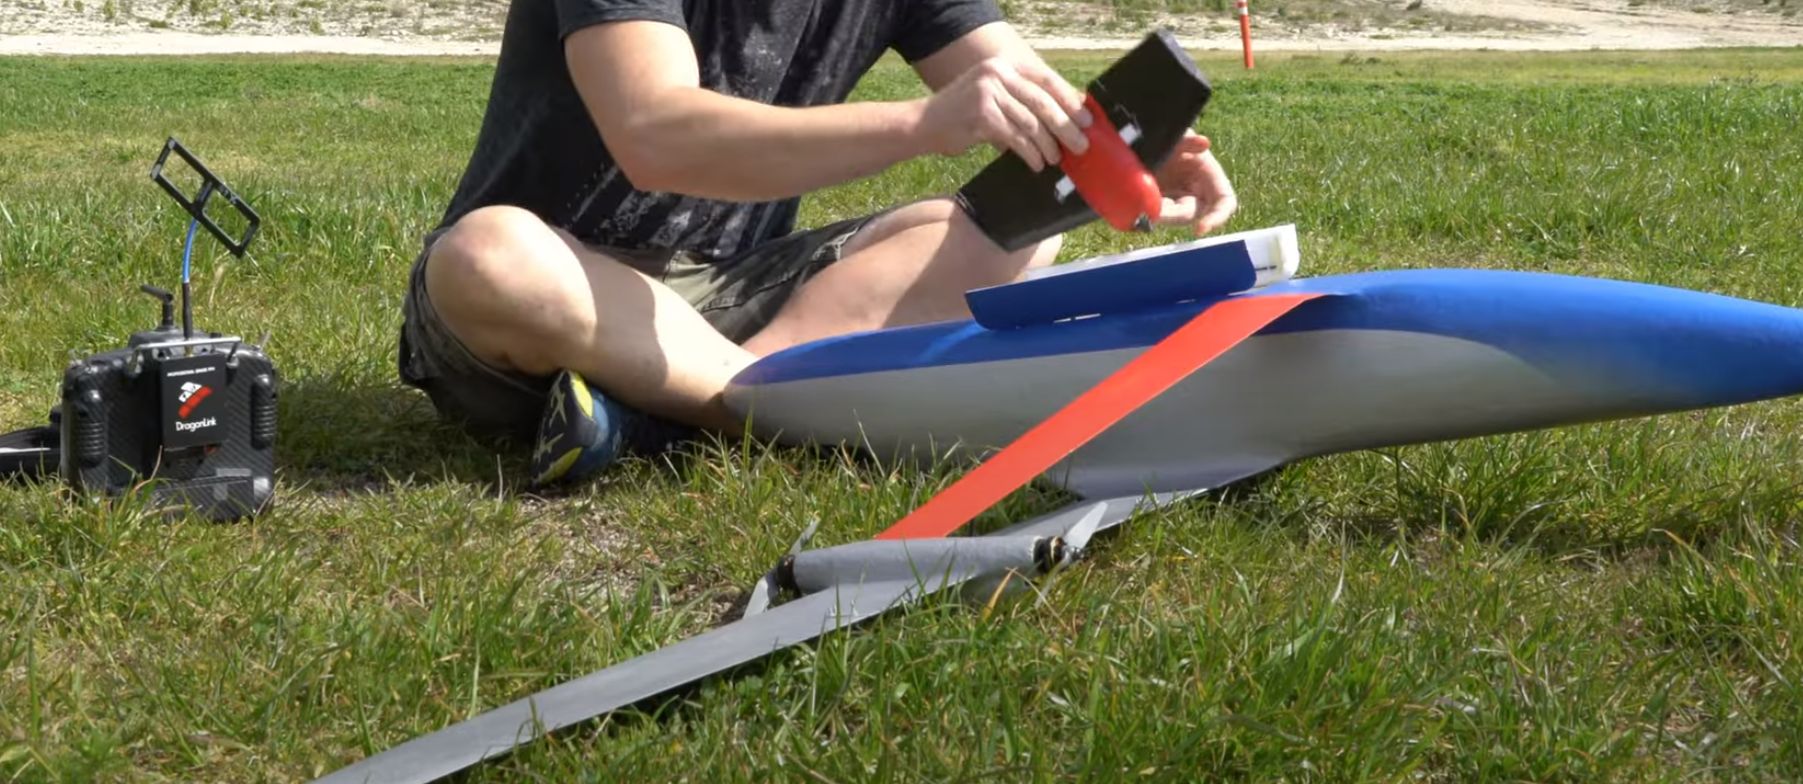 Construirea unui model de aeronavă cu o lontă de viteză: sens sau prostie?